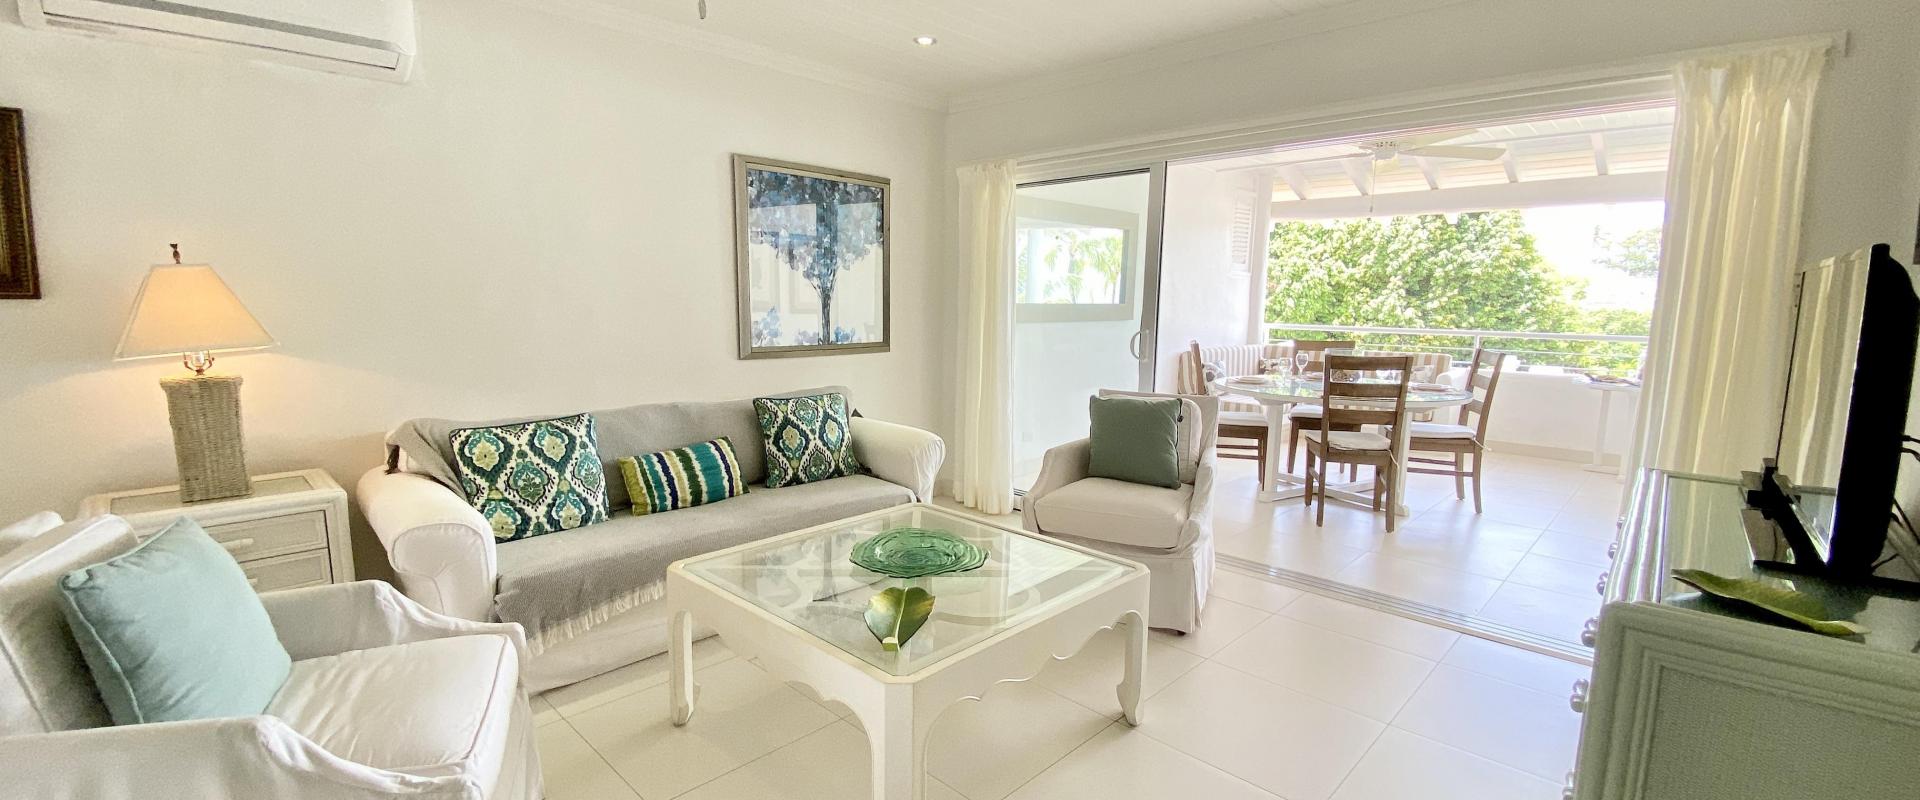 Glitter Bay, Unit 302, Always Summer Condominium/Apartment For Rent in Barbados